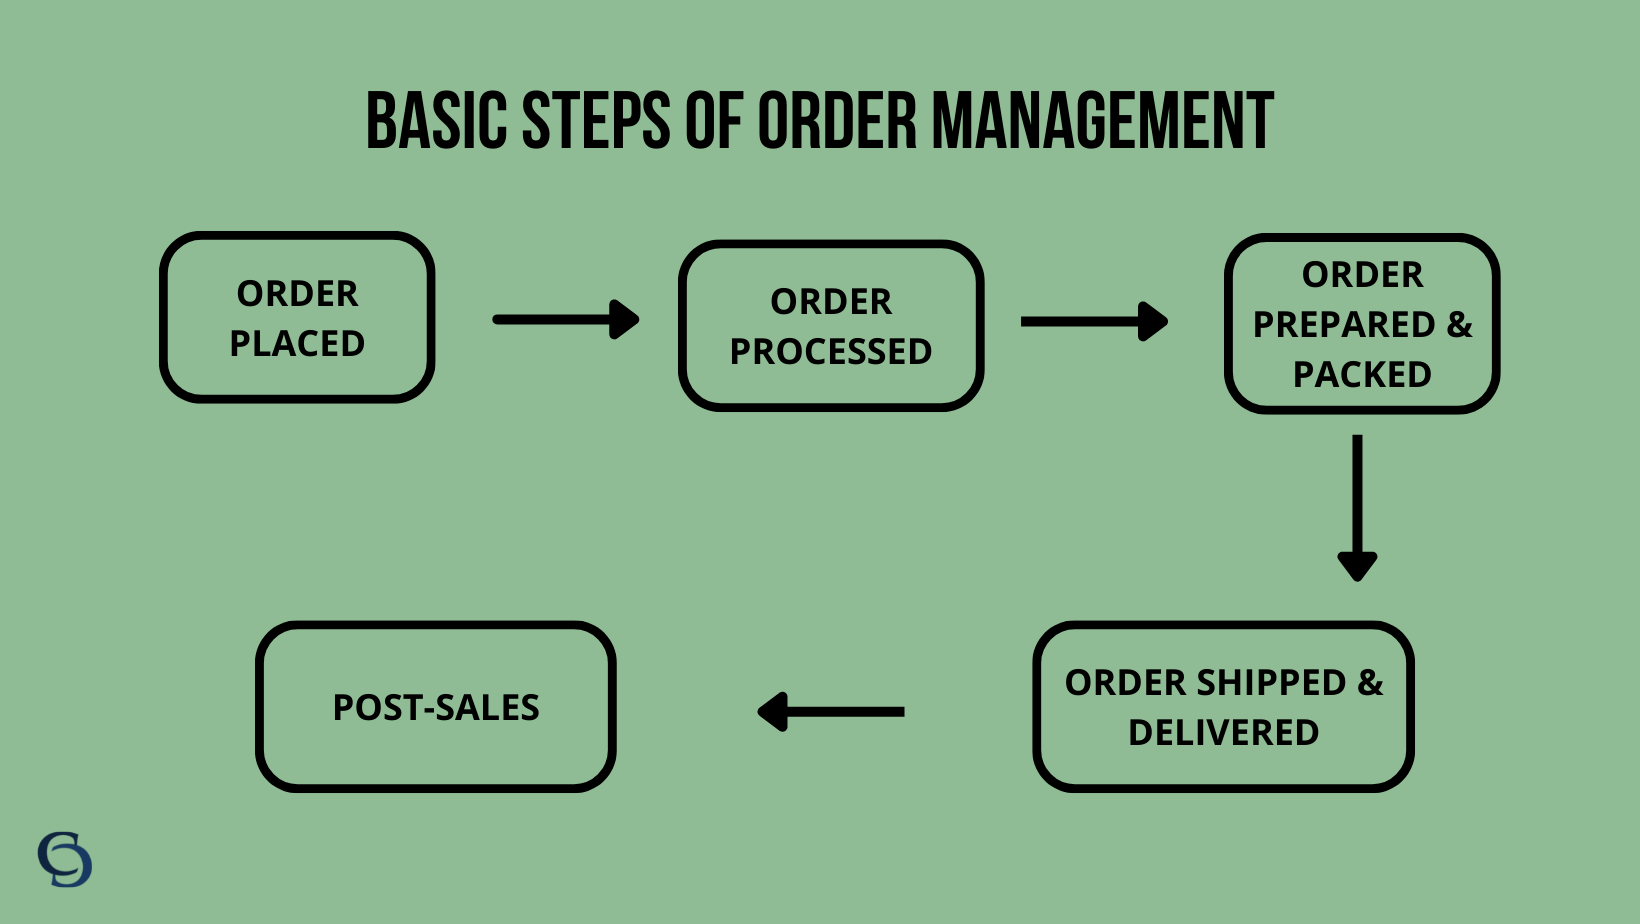 Basic steps of order management